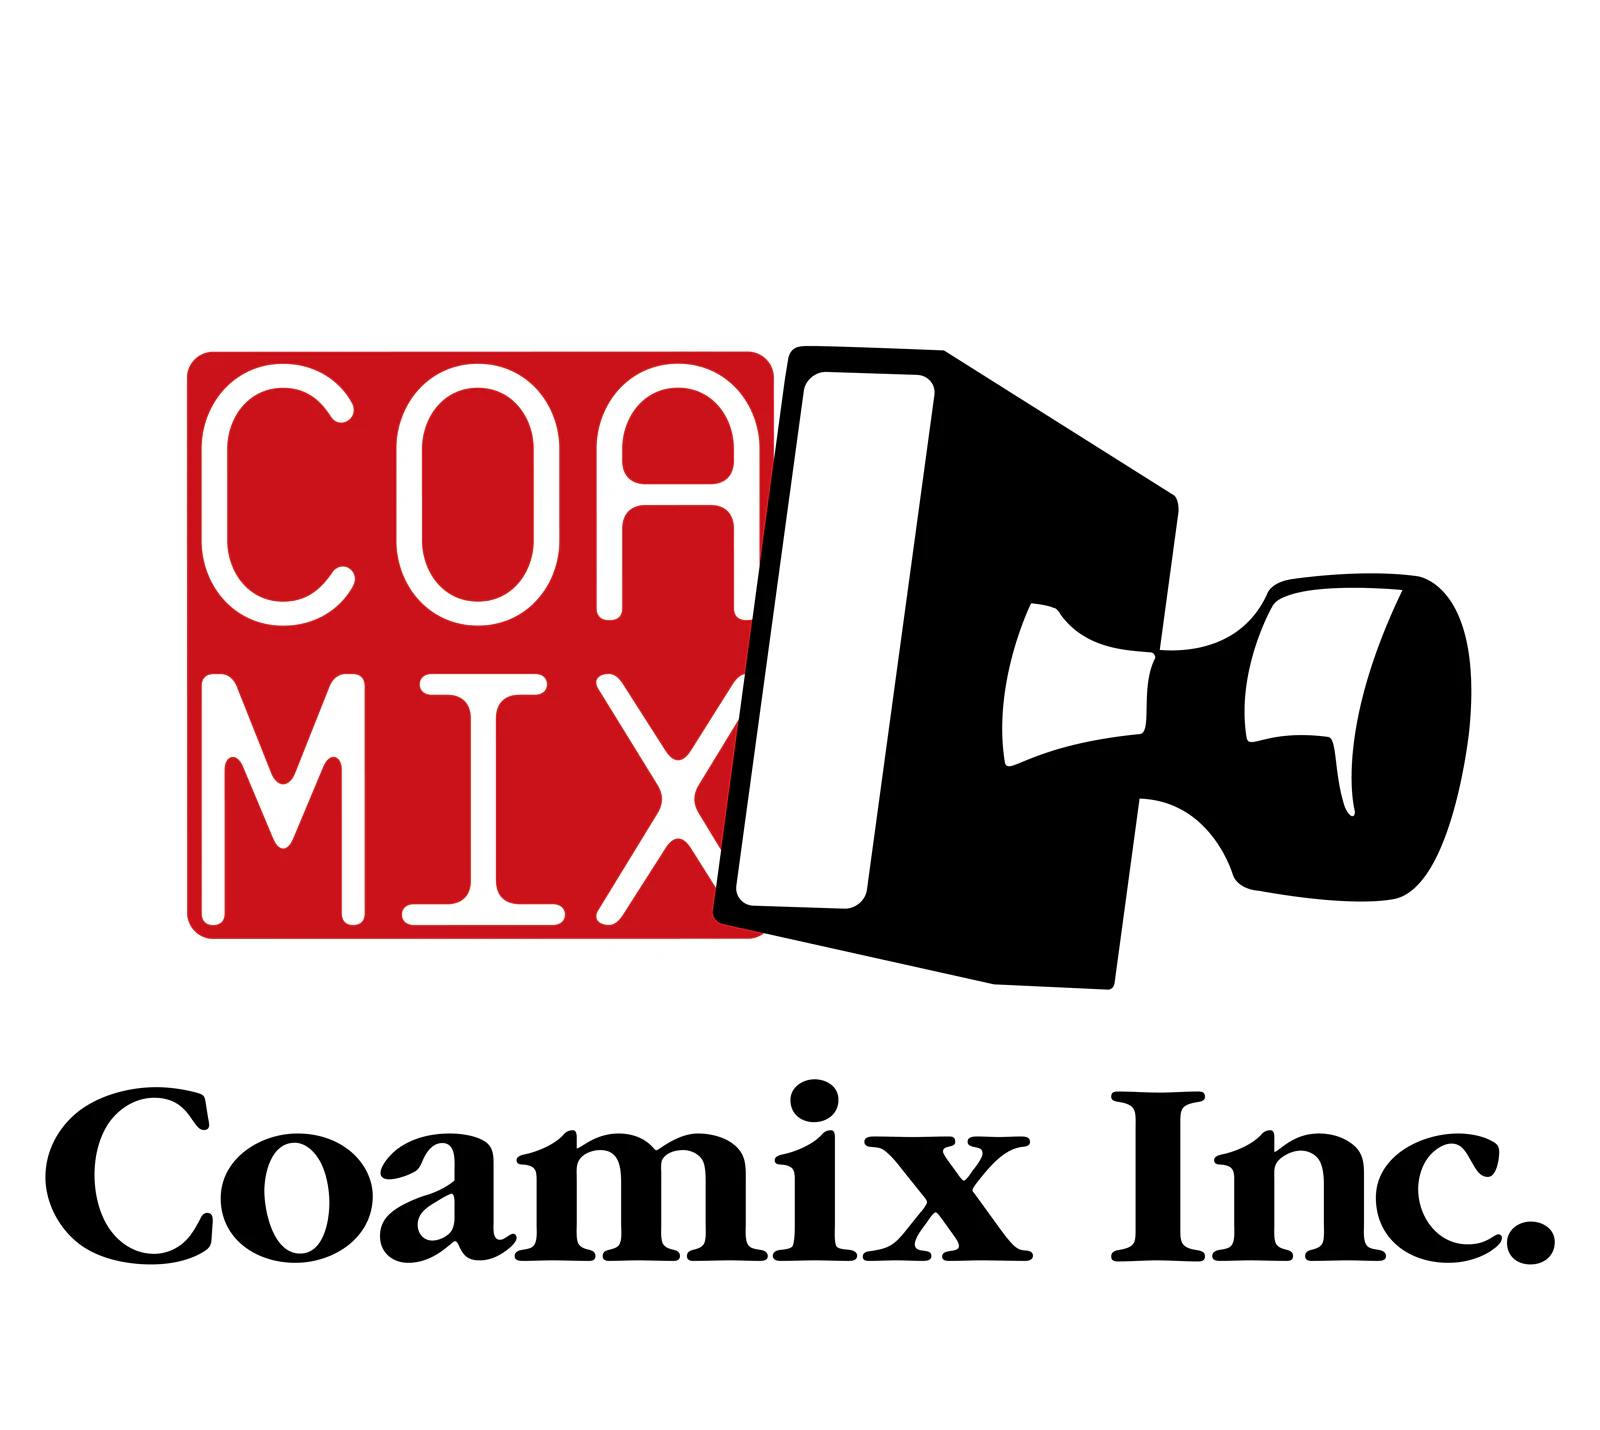 Situs web resmi Coamix telah diperbarui! “Katalog Manga” yang memungkinkan Anda melihat pratinjau dan membeli dengan segera sangatlah nyaman!